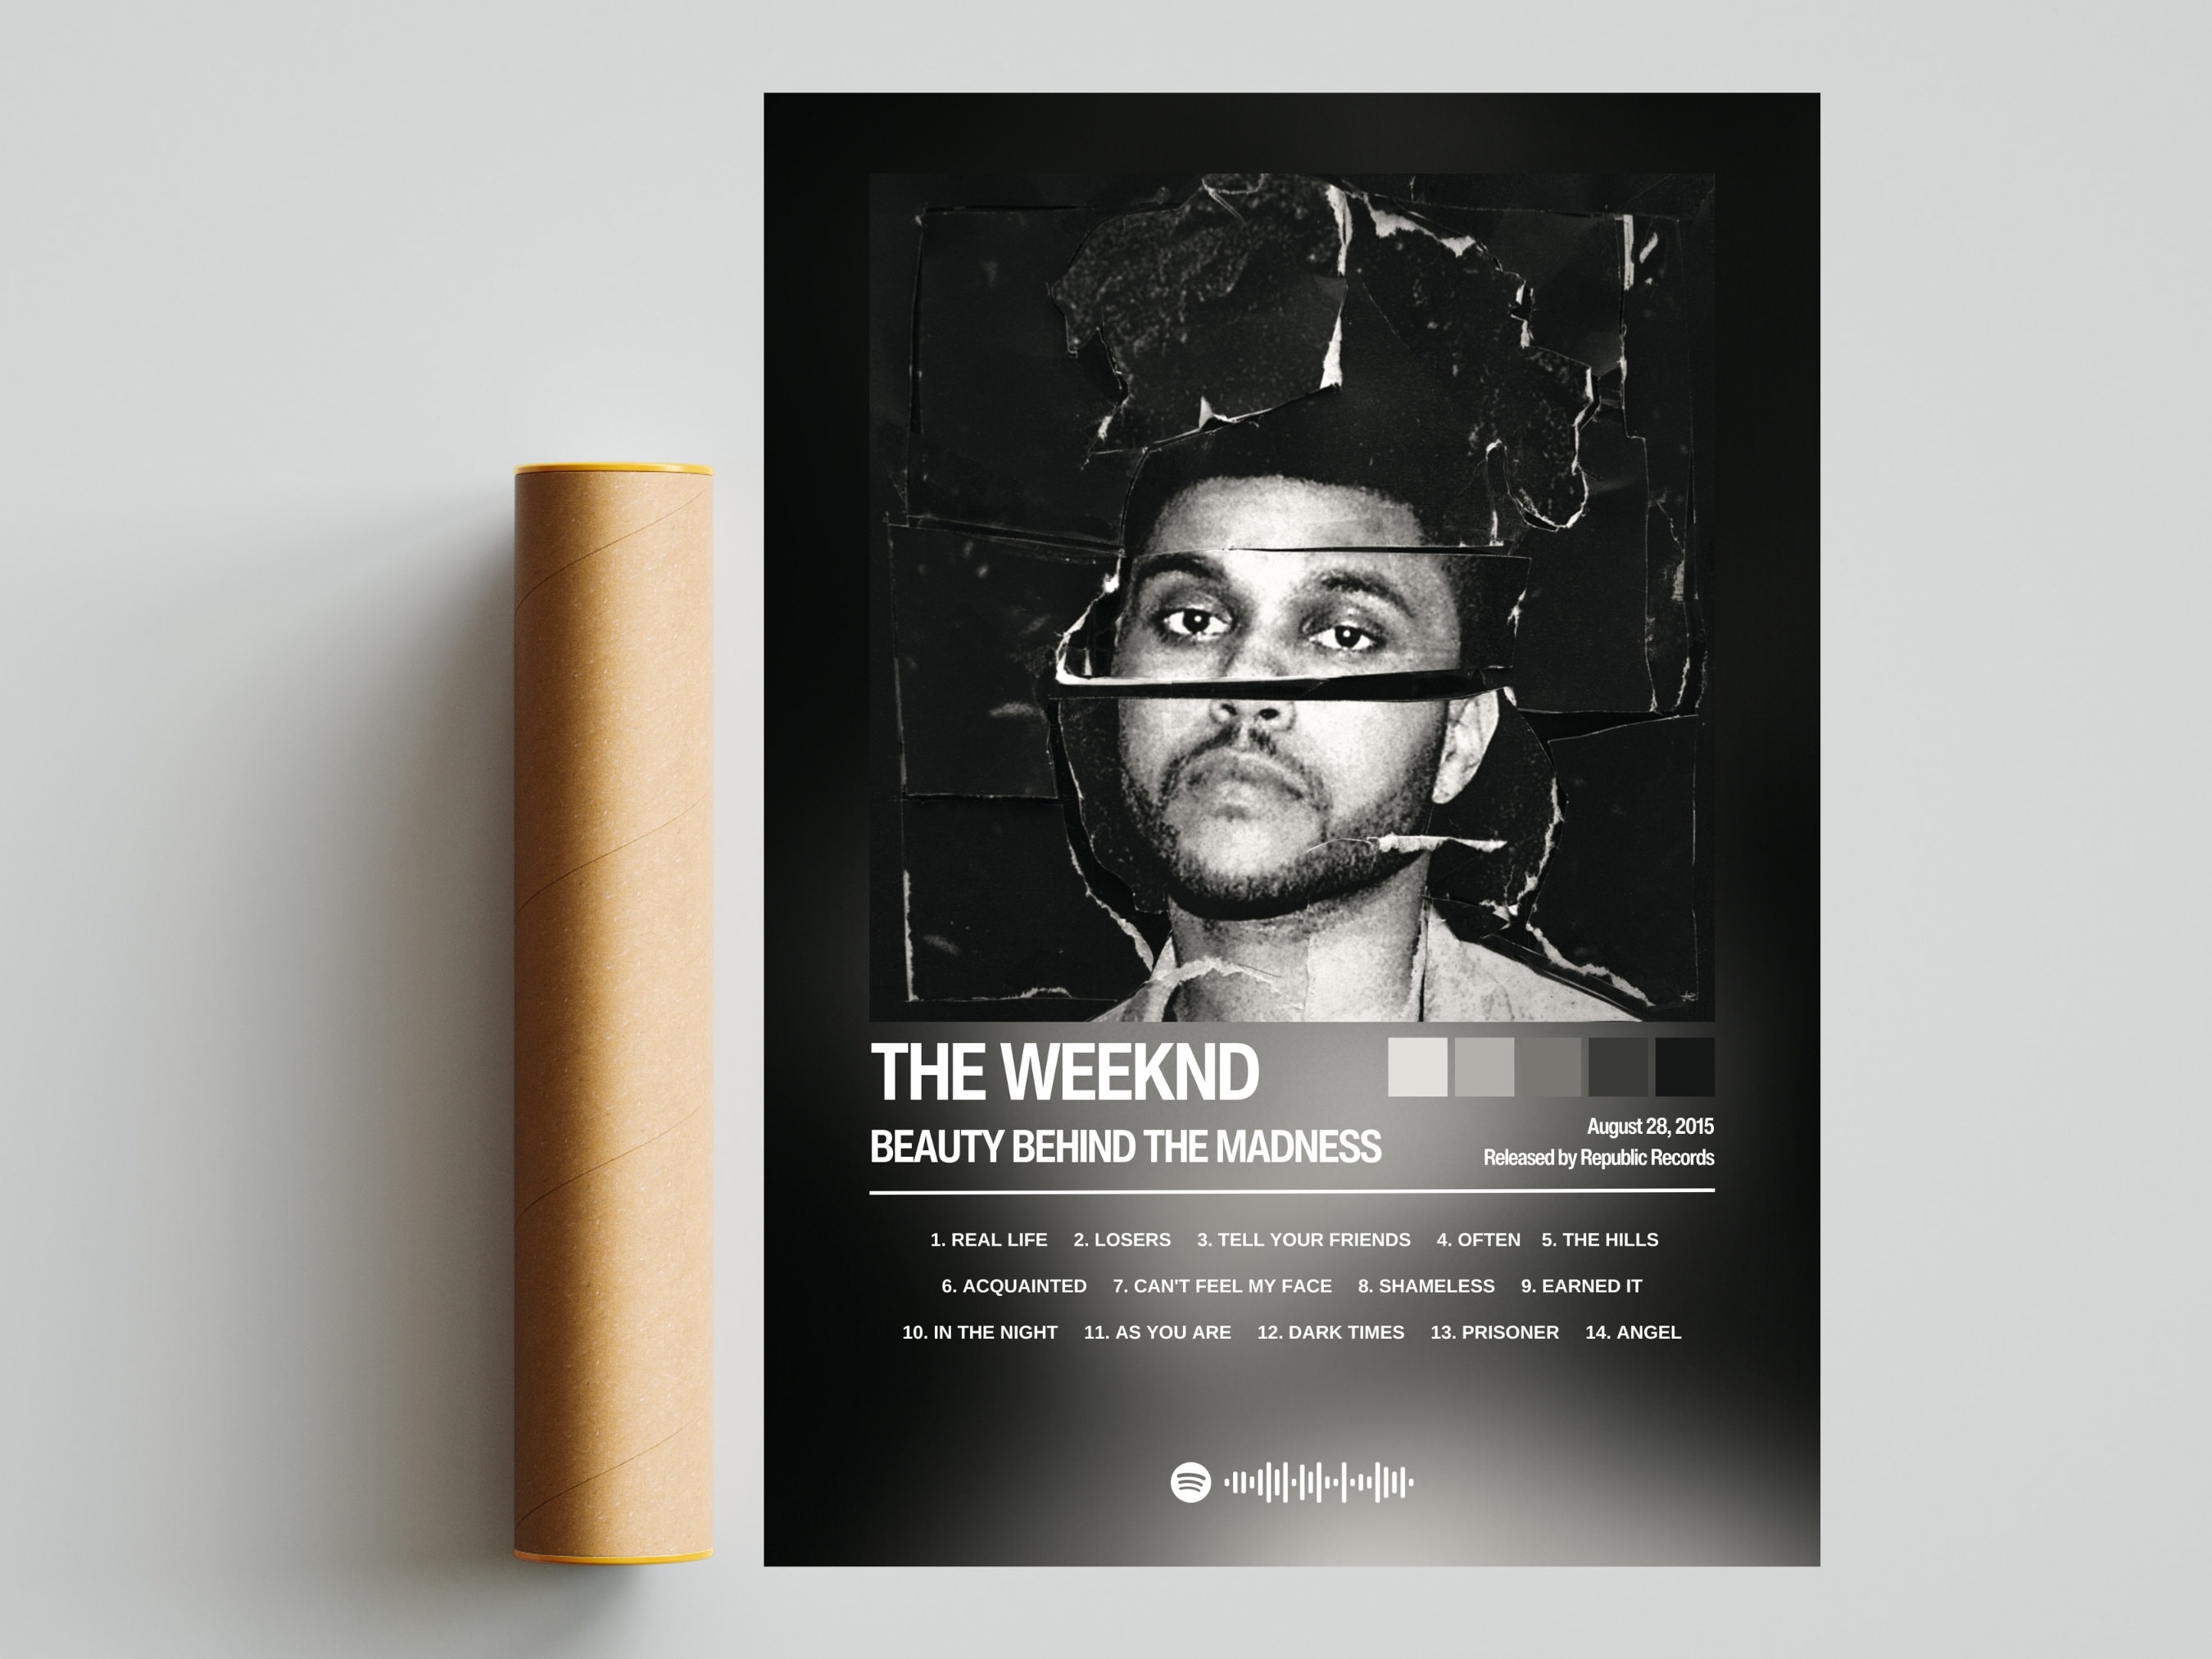 The Weeknd - Earned it (lyrics spotify version) 